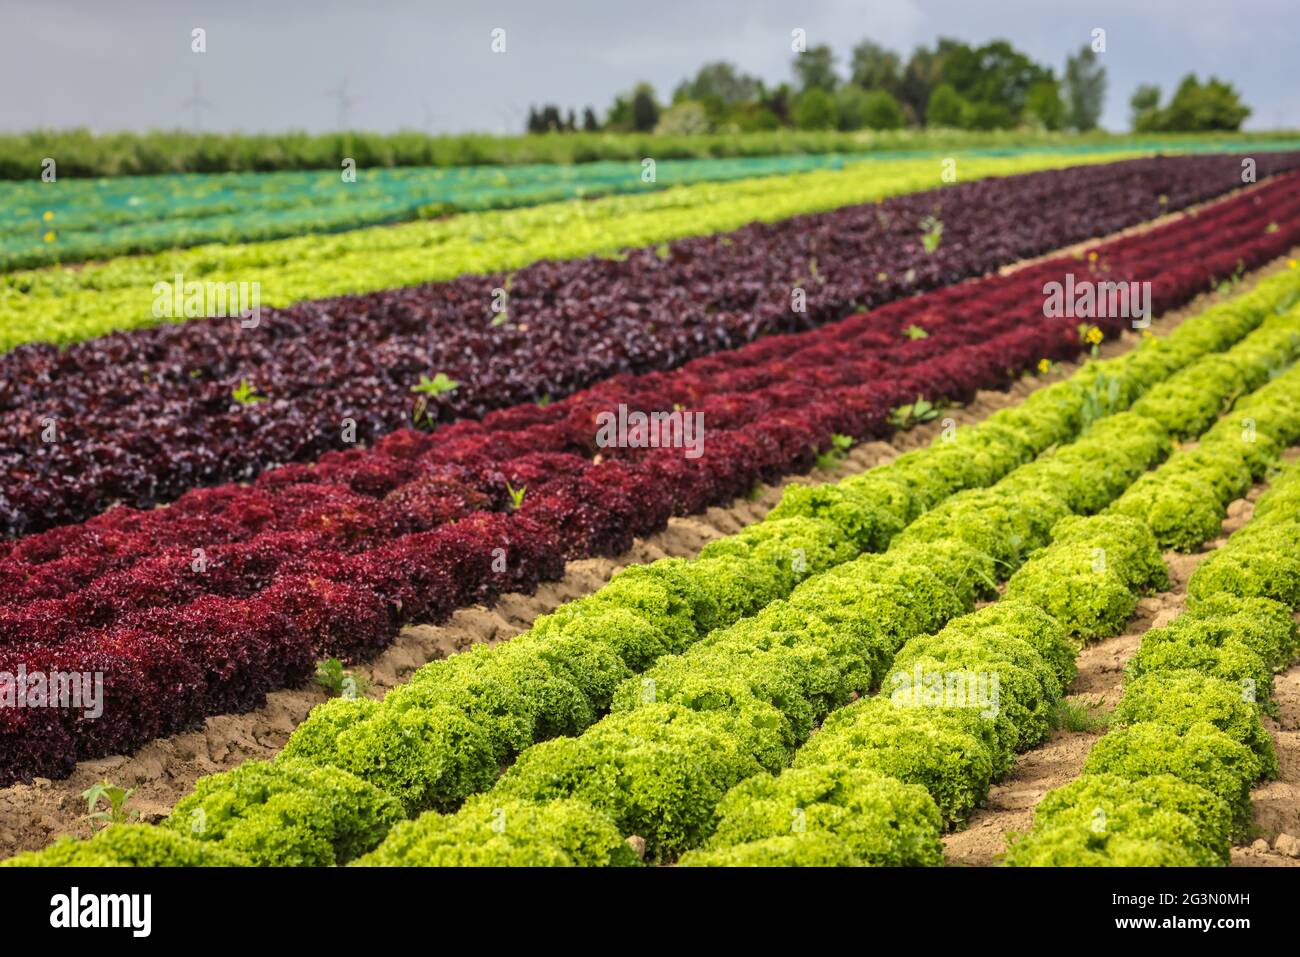 '25.05.2021, Soest, Nordrhein-Westfalen, Deutschland - Gemüseanbau, Salatpflanzen wachsen in Reihen auf dem Feld, Eichenblattsalat (Lactus sativa Stockfoto